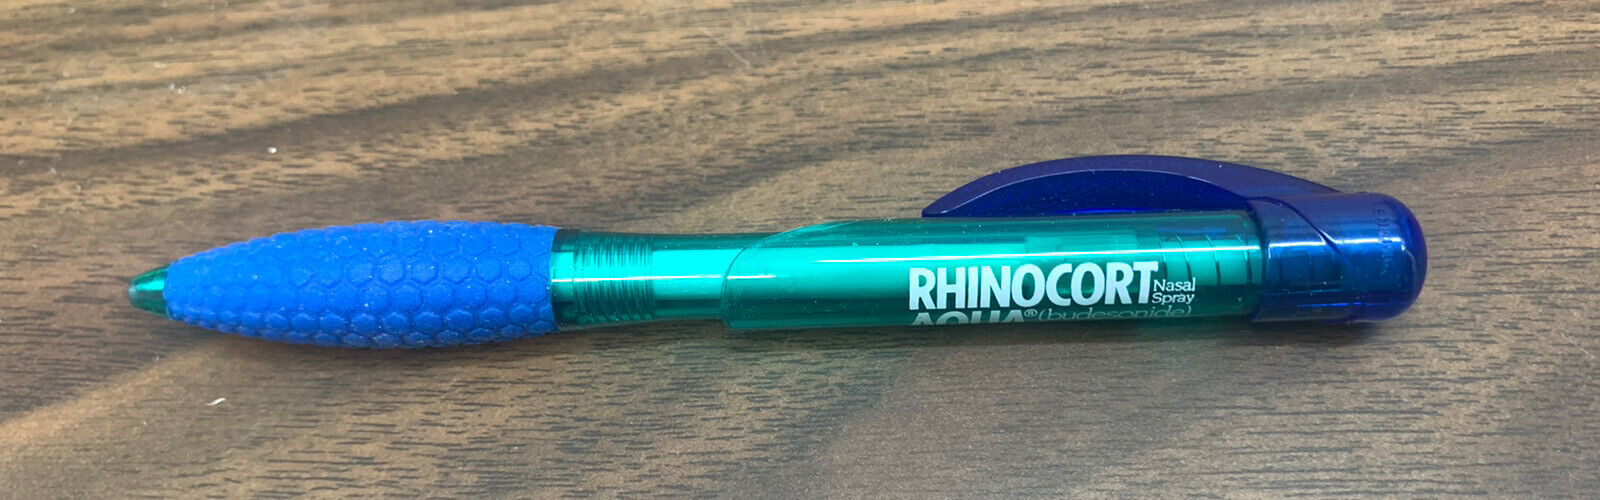 RHINOCORT AQUA * Drug Rep Pen * PaperMate Rhinoceros * Comfort Grip *